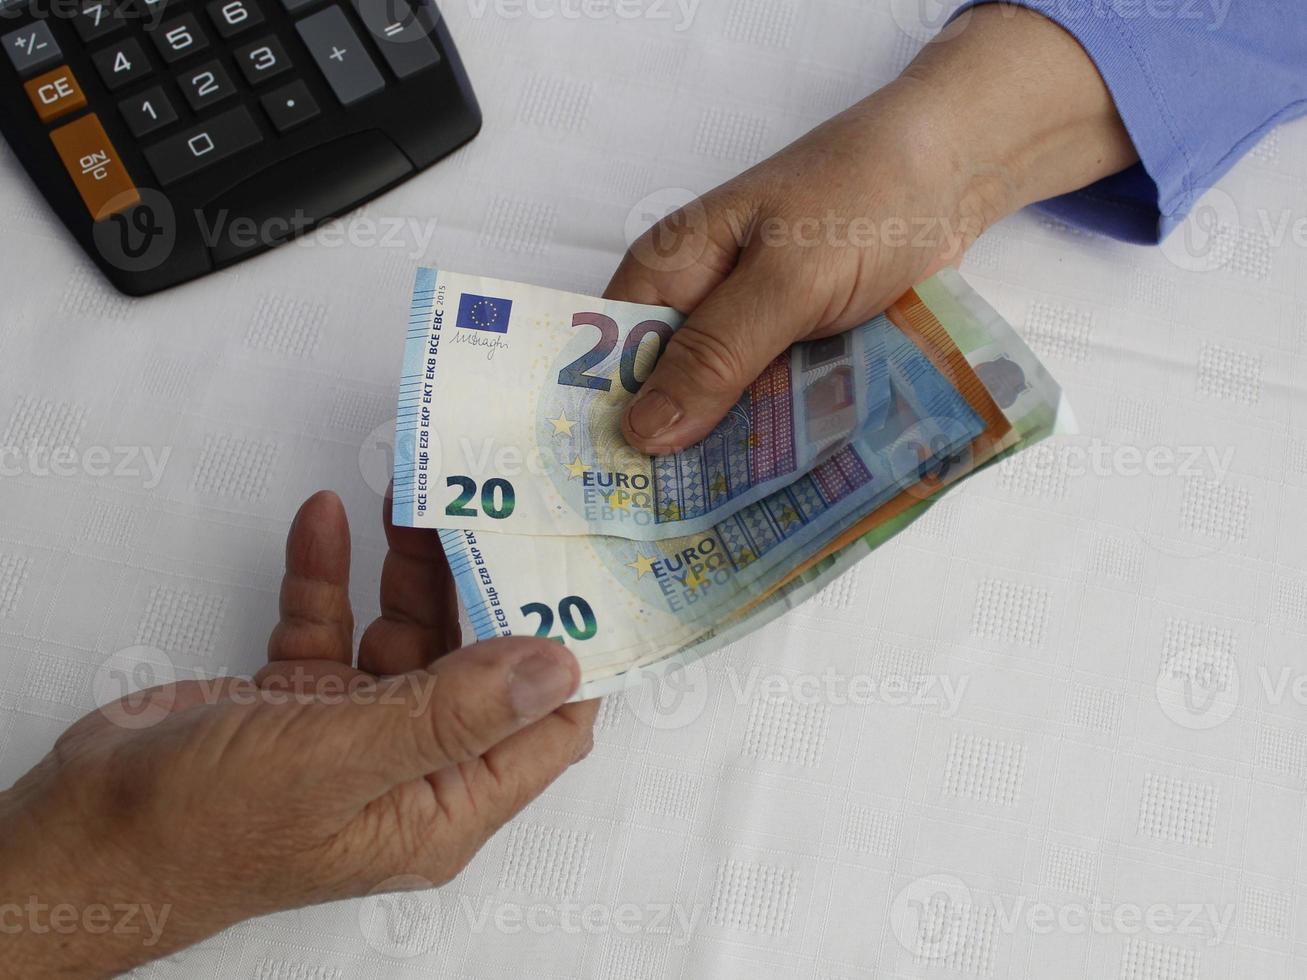 Fotografía para temas económicos y financieros con dinero europeo. foto